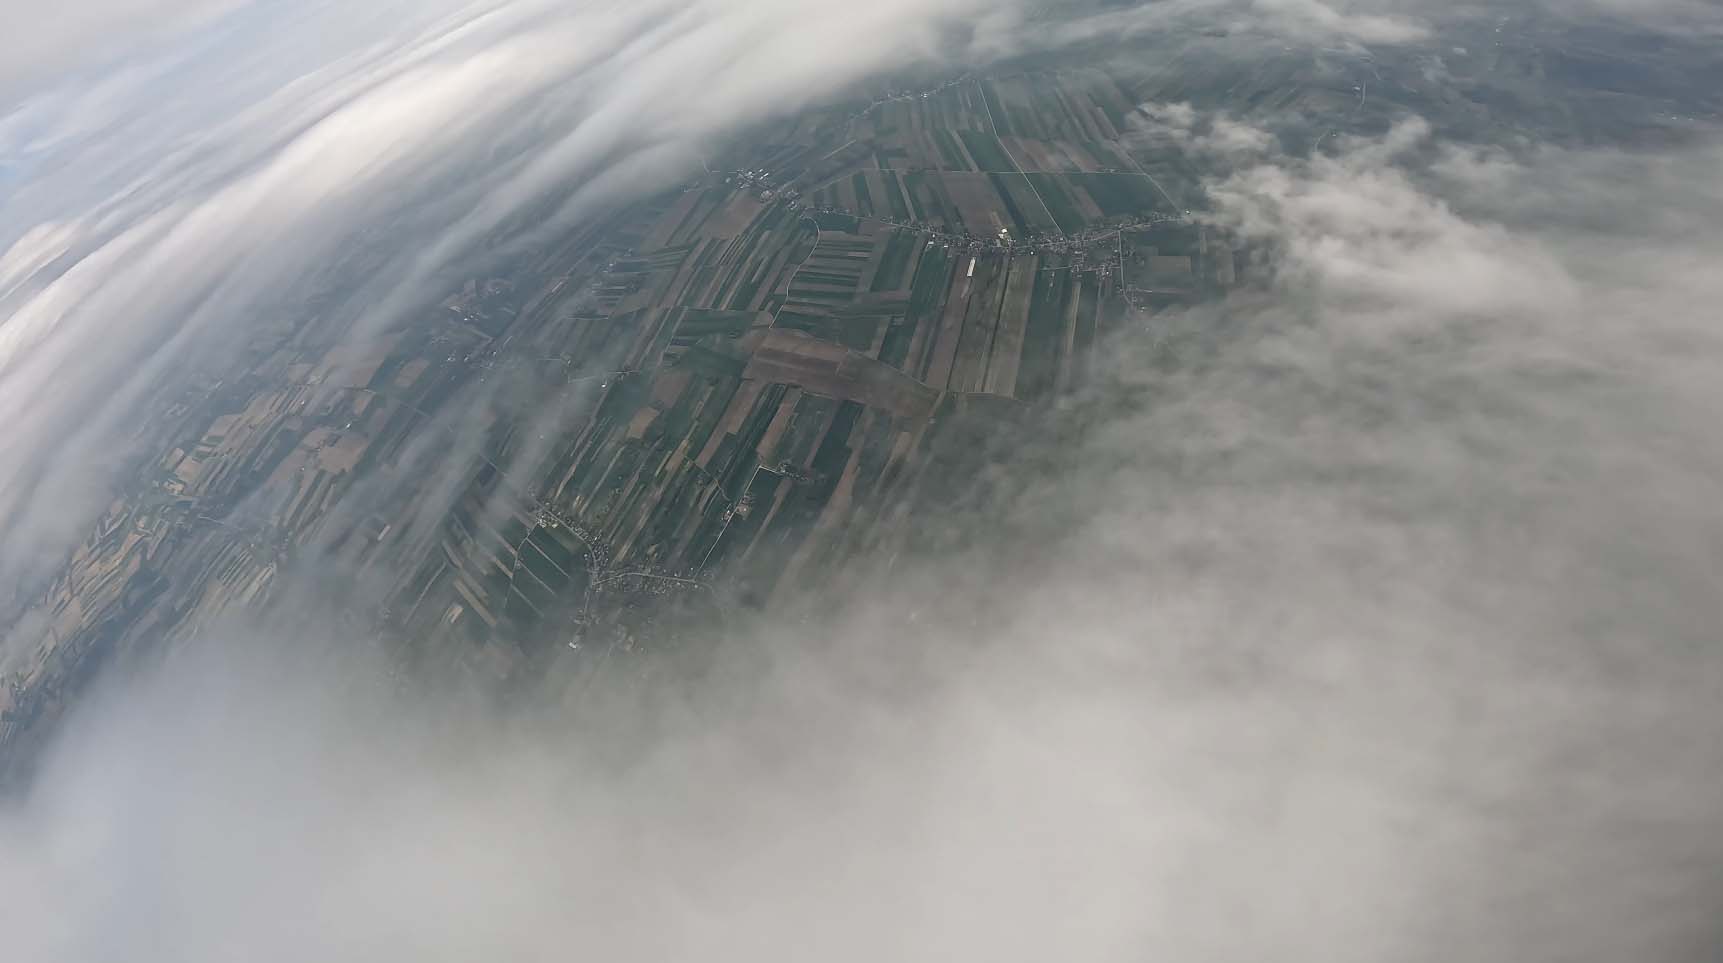 Zdjęcia wykonane przez sondę w trakcie lotu